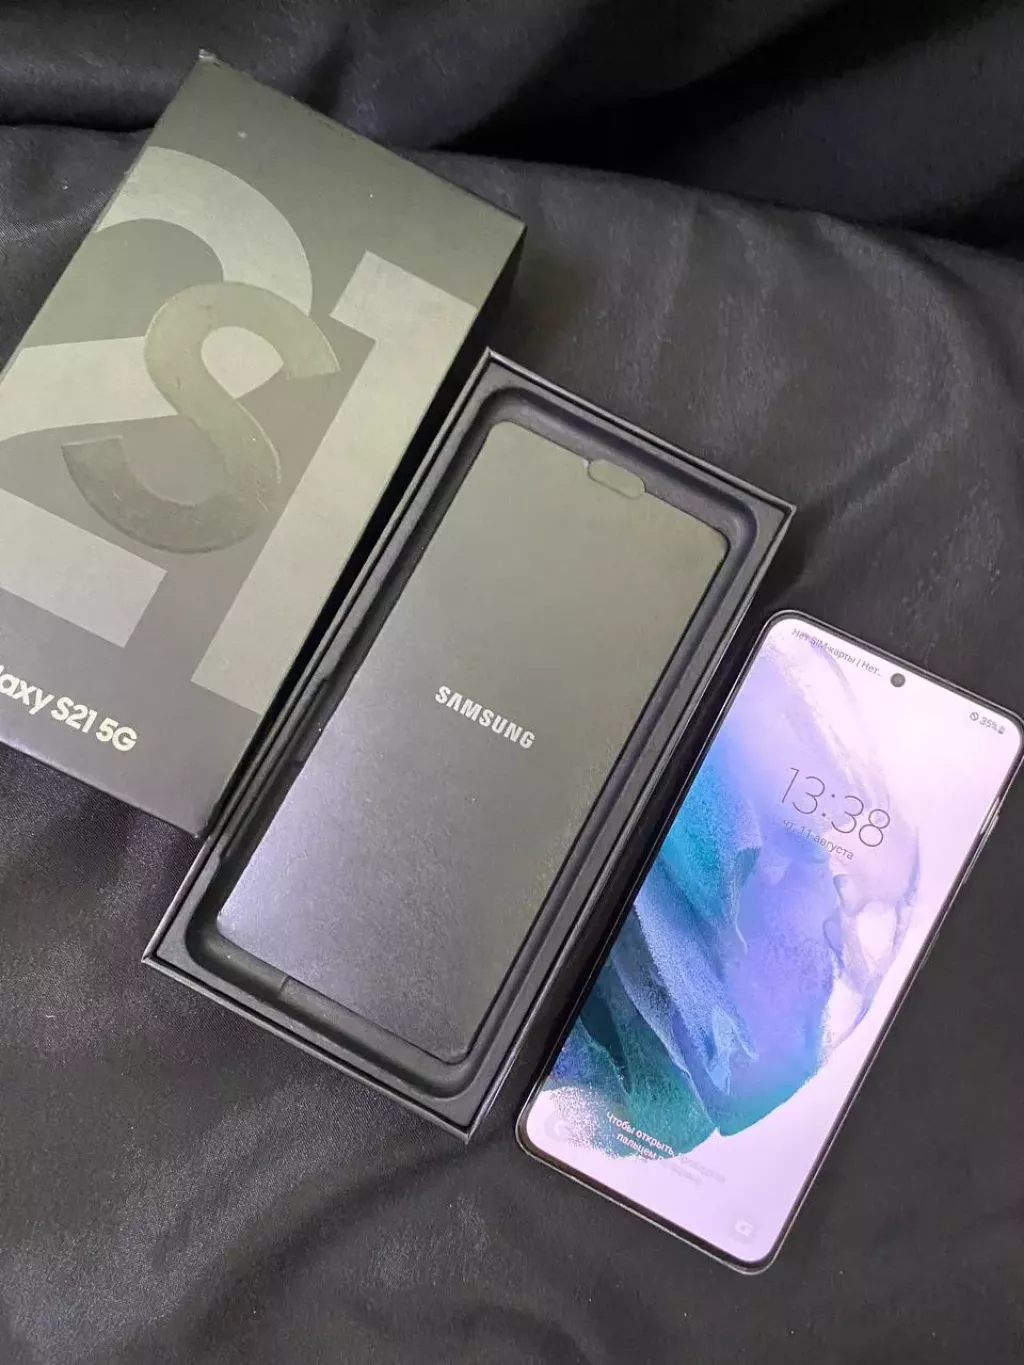 Купить б/у Samsung Galaxy S21-1